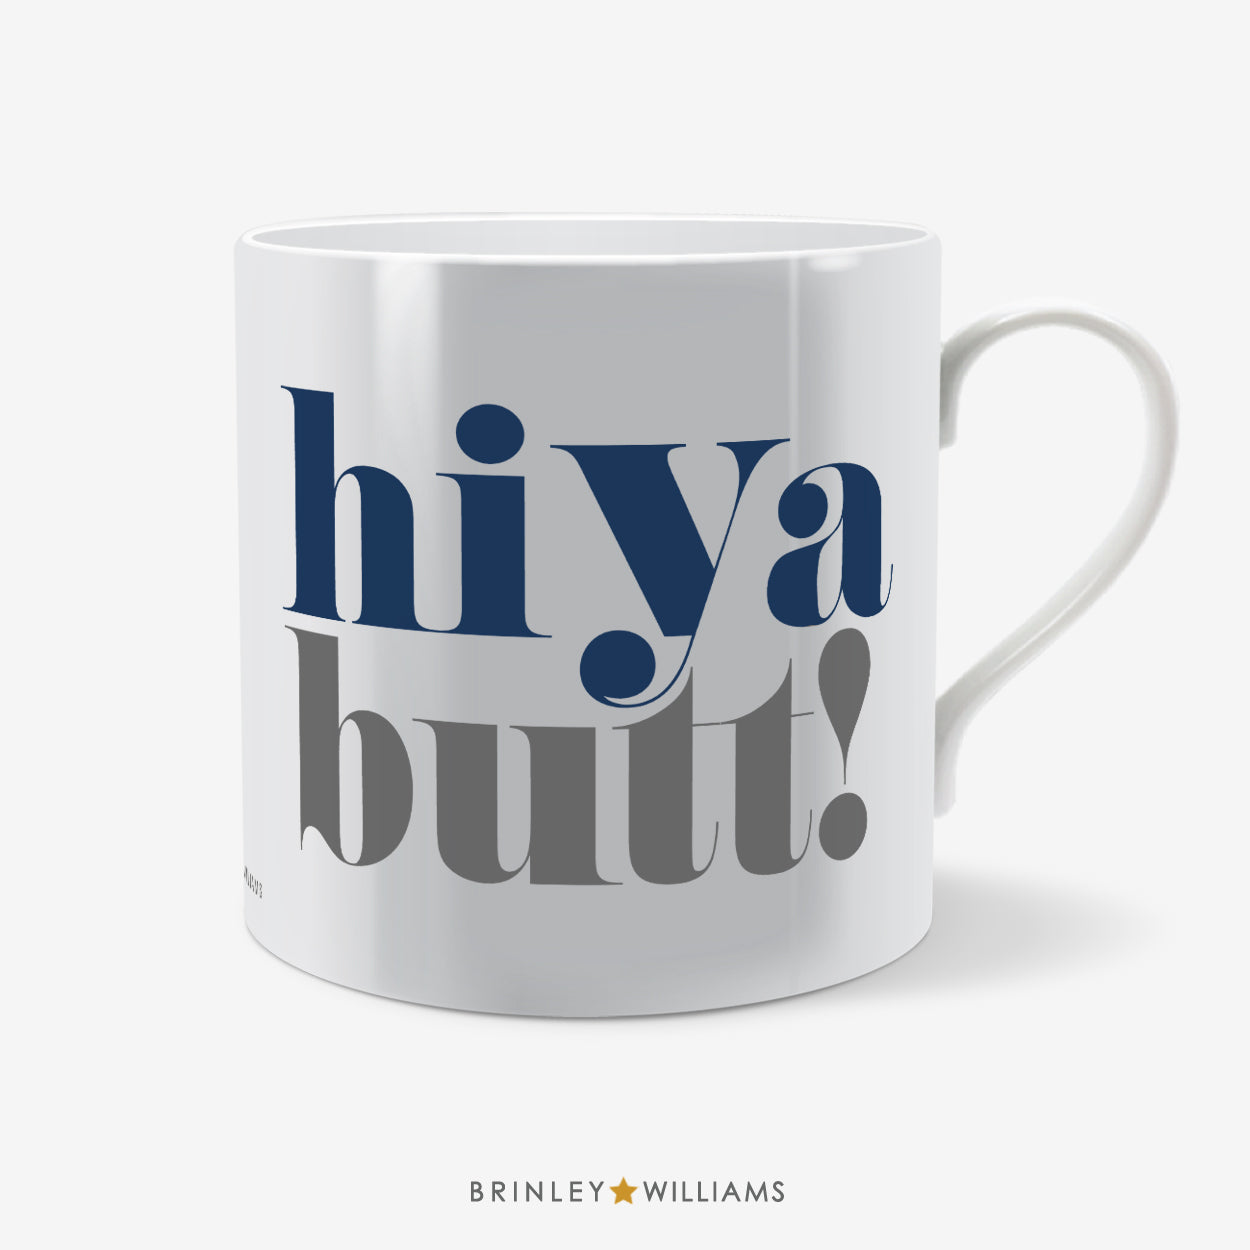 Hiya Butt Welsh Mug - Navy